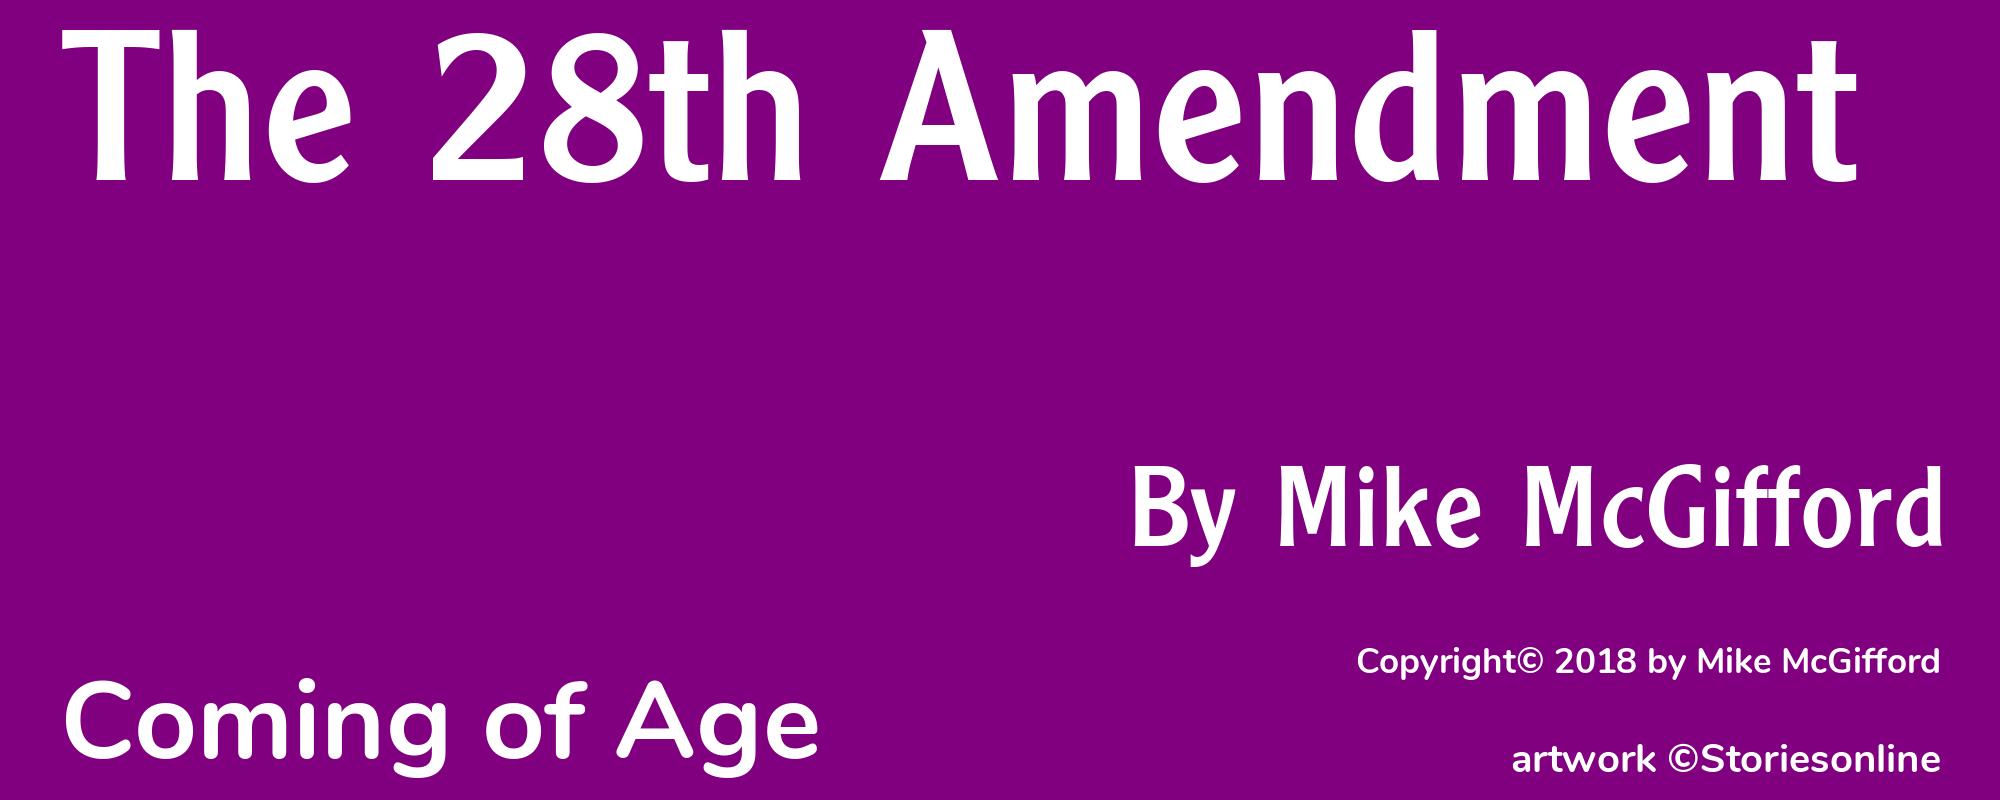 The 28th Amendment - Cover